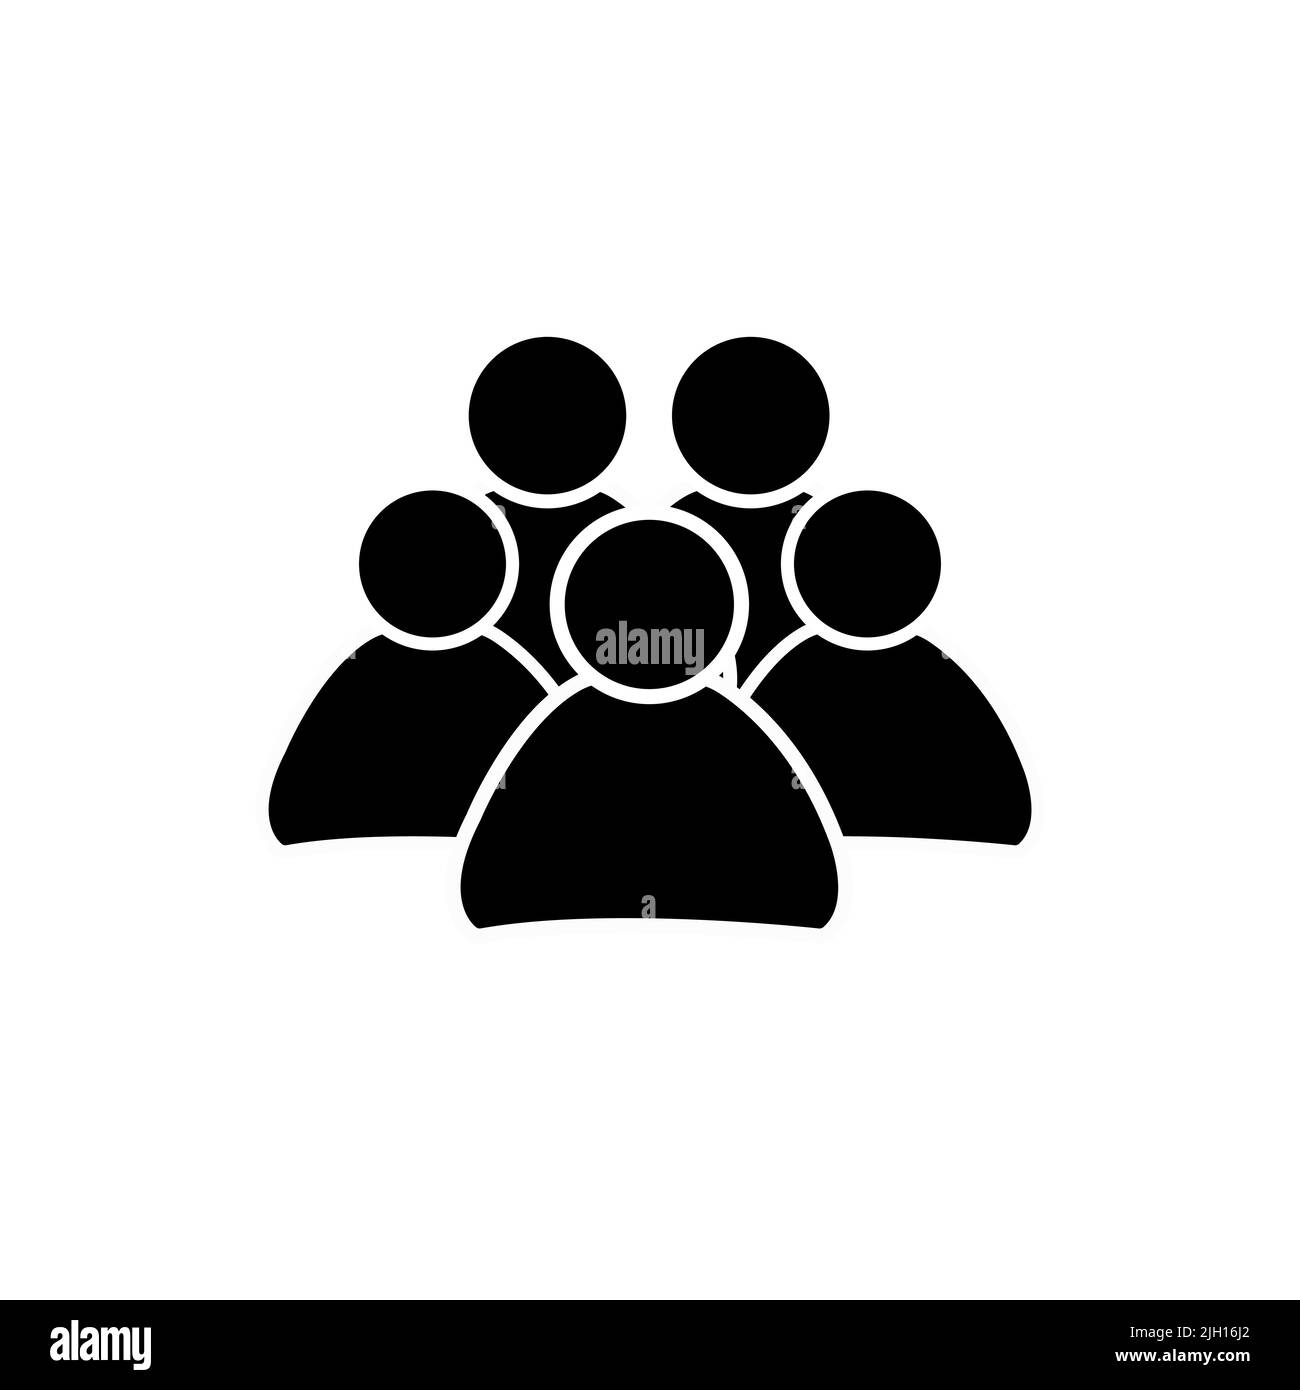 Fünf Personen, Ikone. Illustration der Menge von Menschen Symbol Silhouetten Vektor. Symbol für soziale Netzwerke. Flaches Design. Stock Vektor